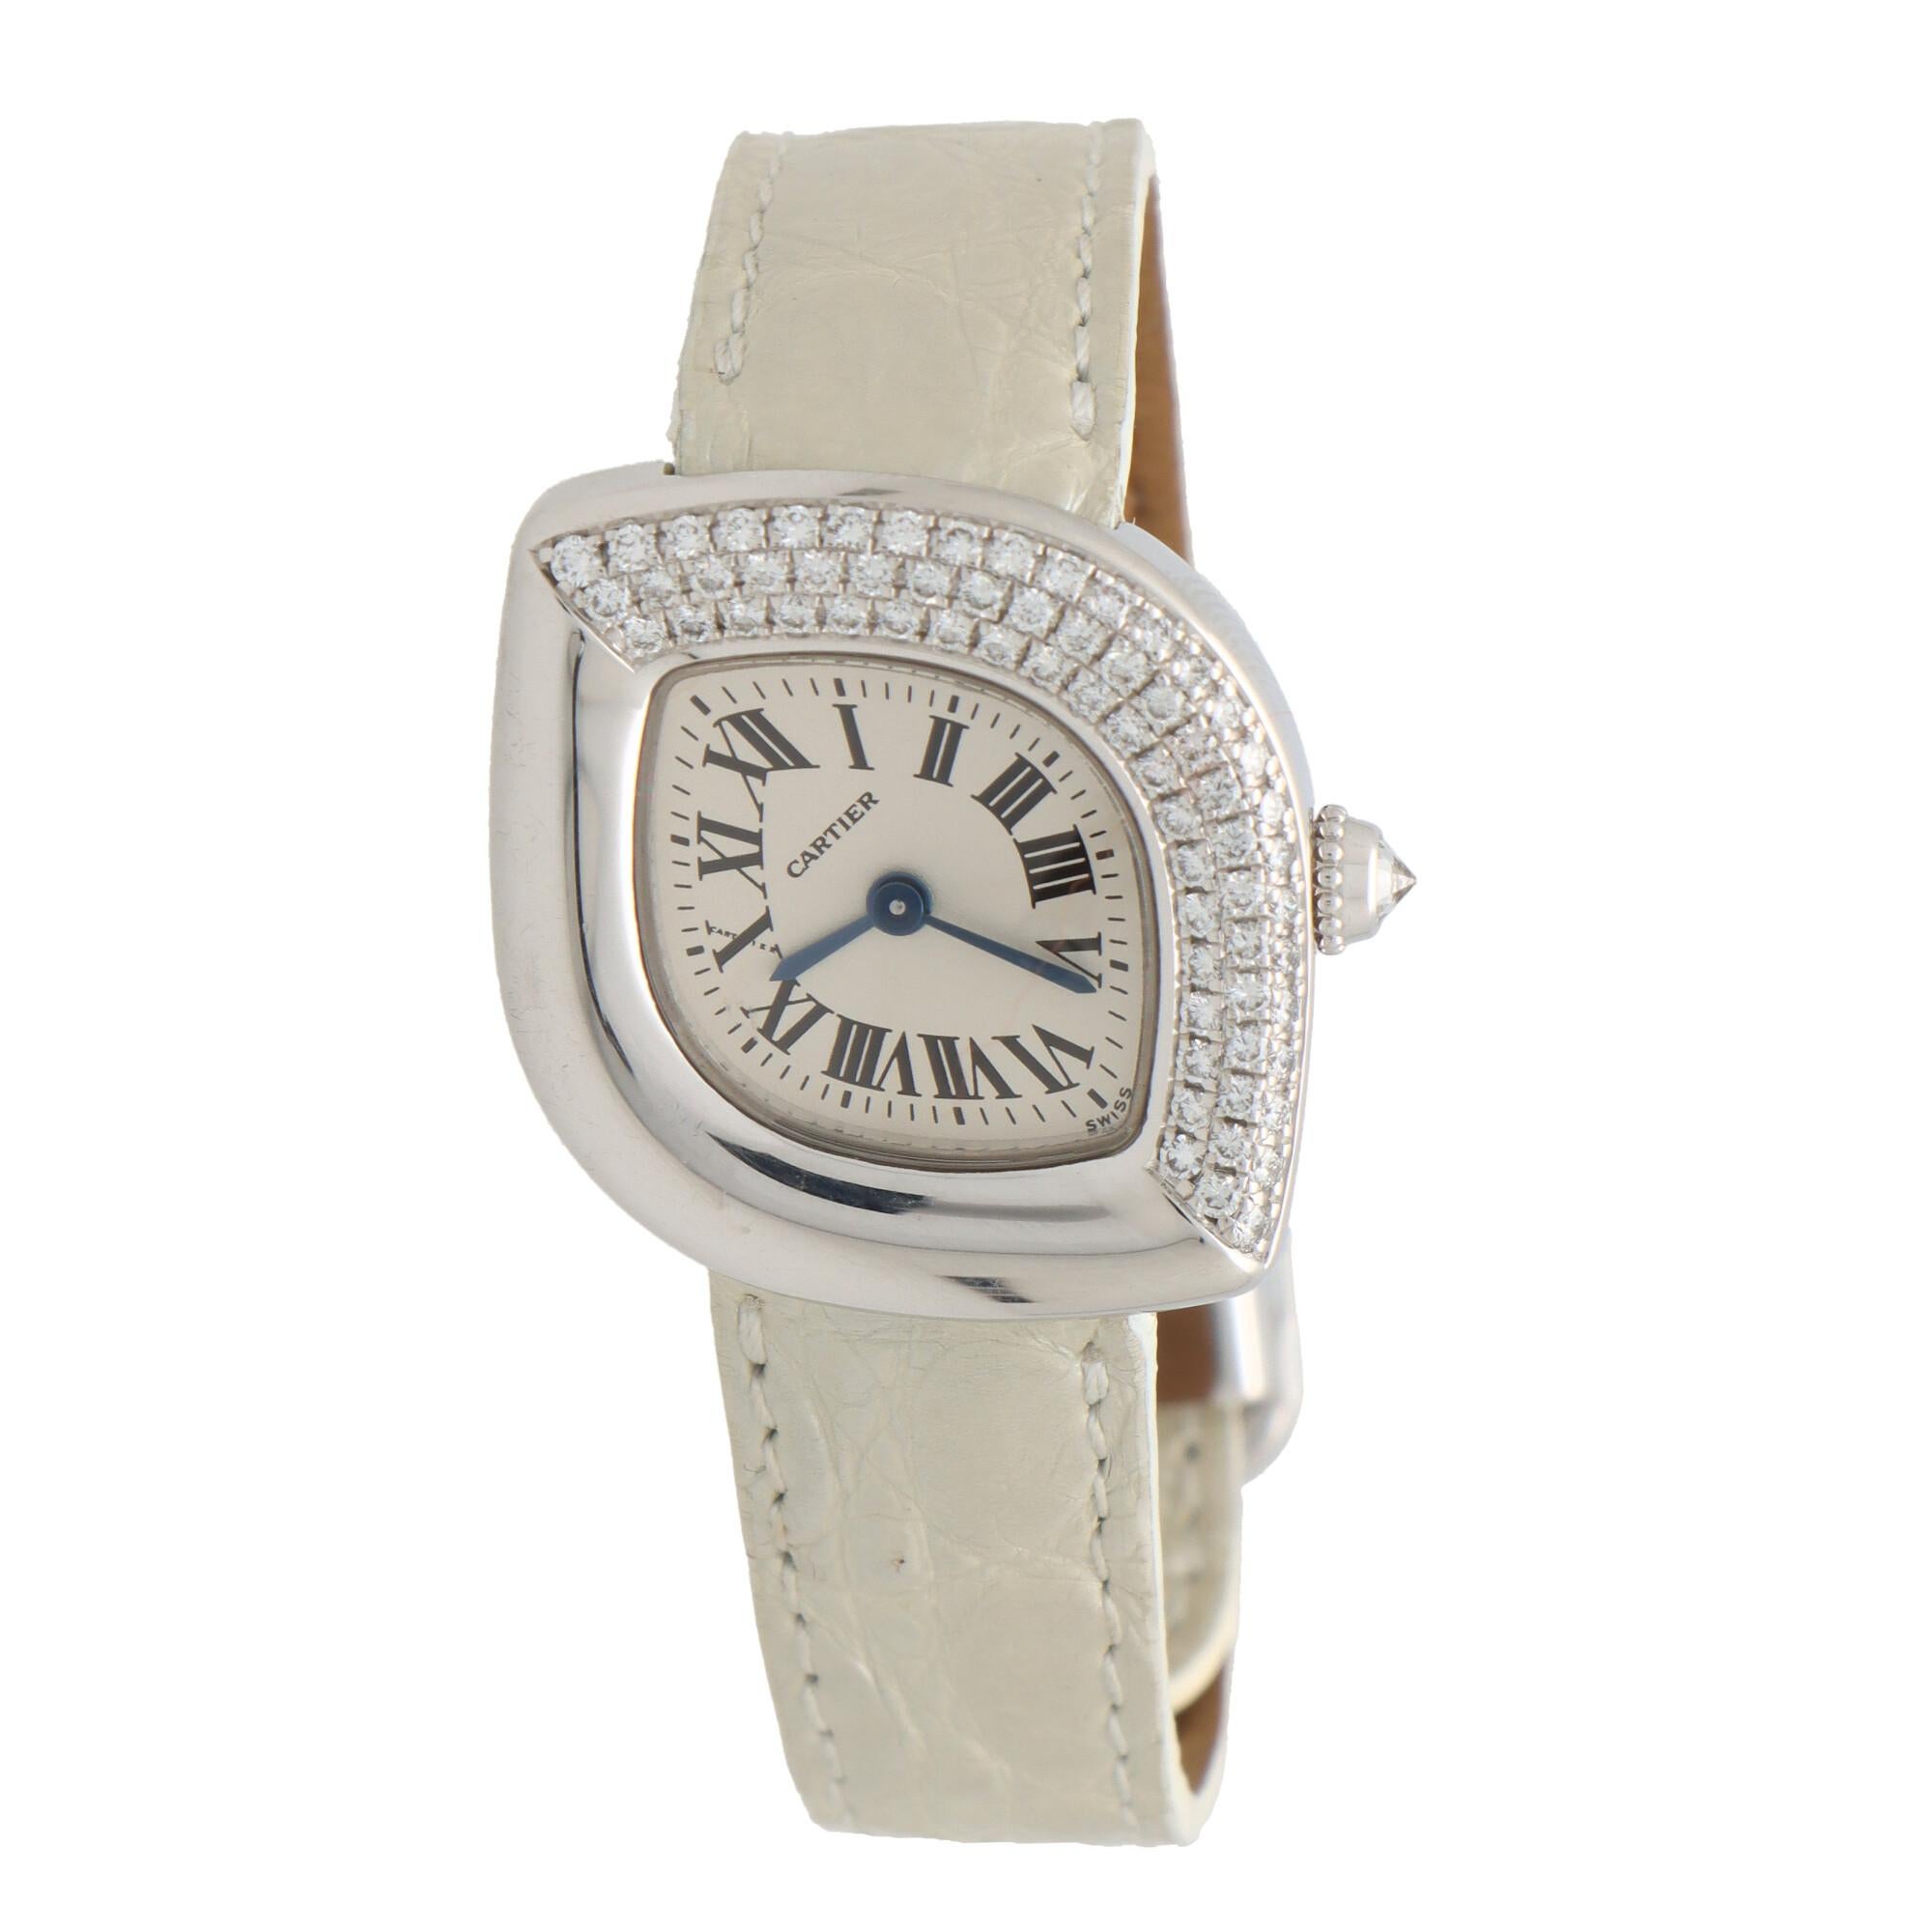 Magnifique montre-bracelet vintage Cartier 'Navette' en or blanc 18 carats et diamants. 

La montre est dotée d'un boîtier décalé en forme de Brilliante mesurant 25 millimètres de diamètre, dont un côté est pavé de diamants ronds de taille